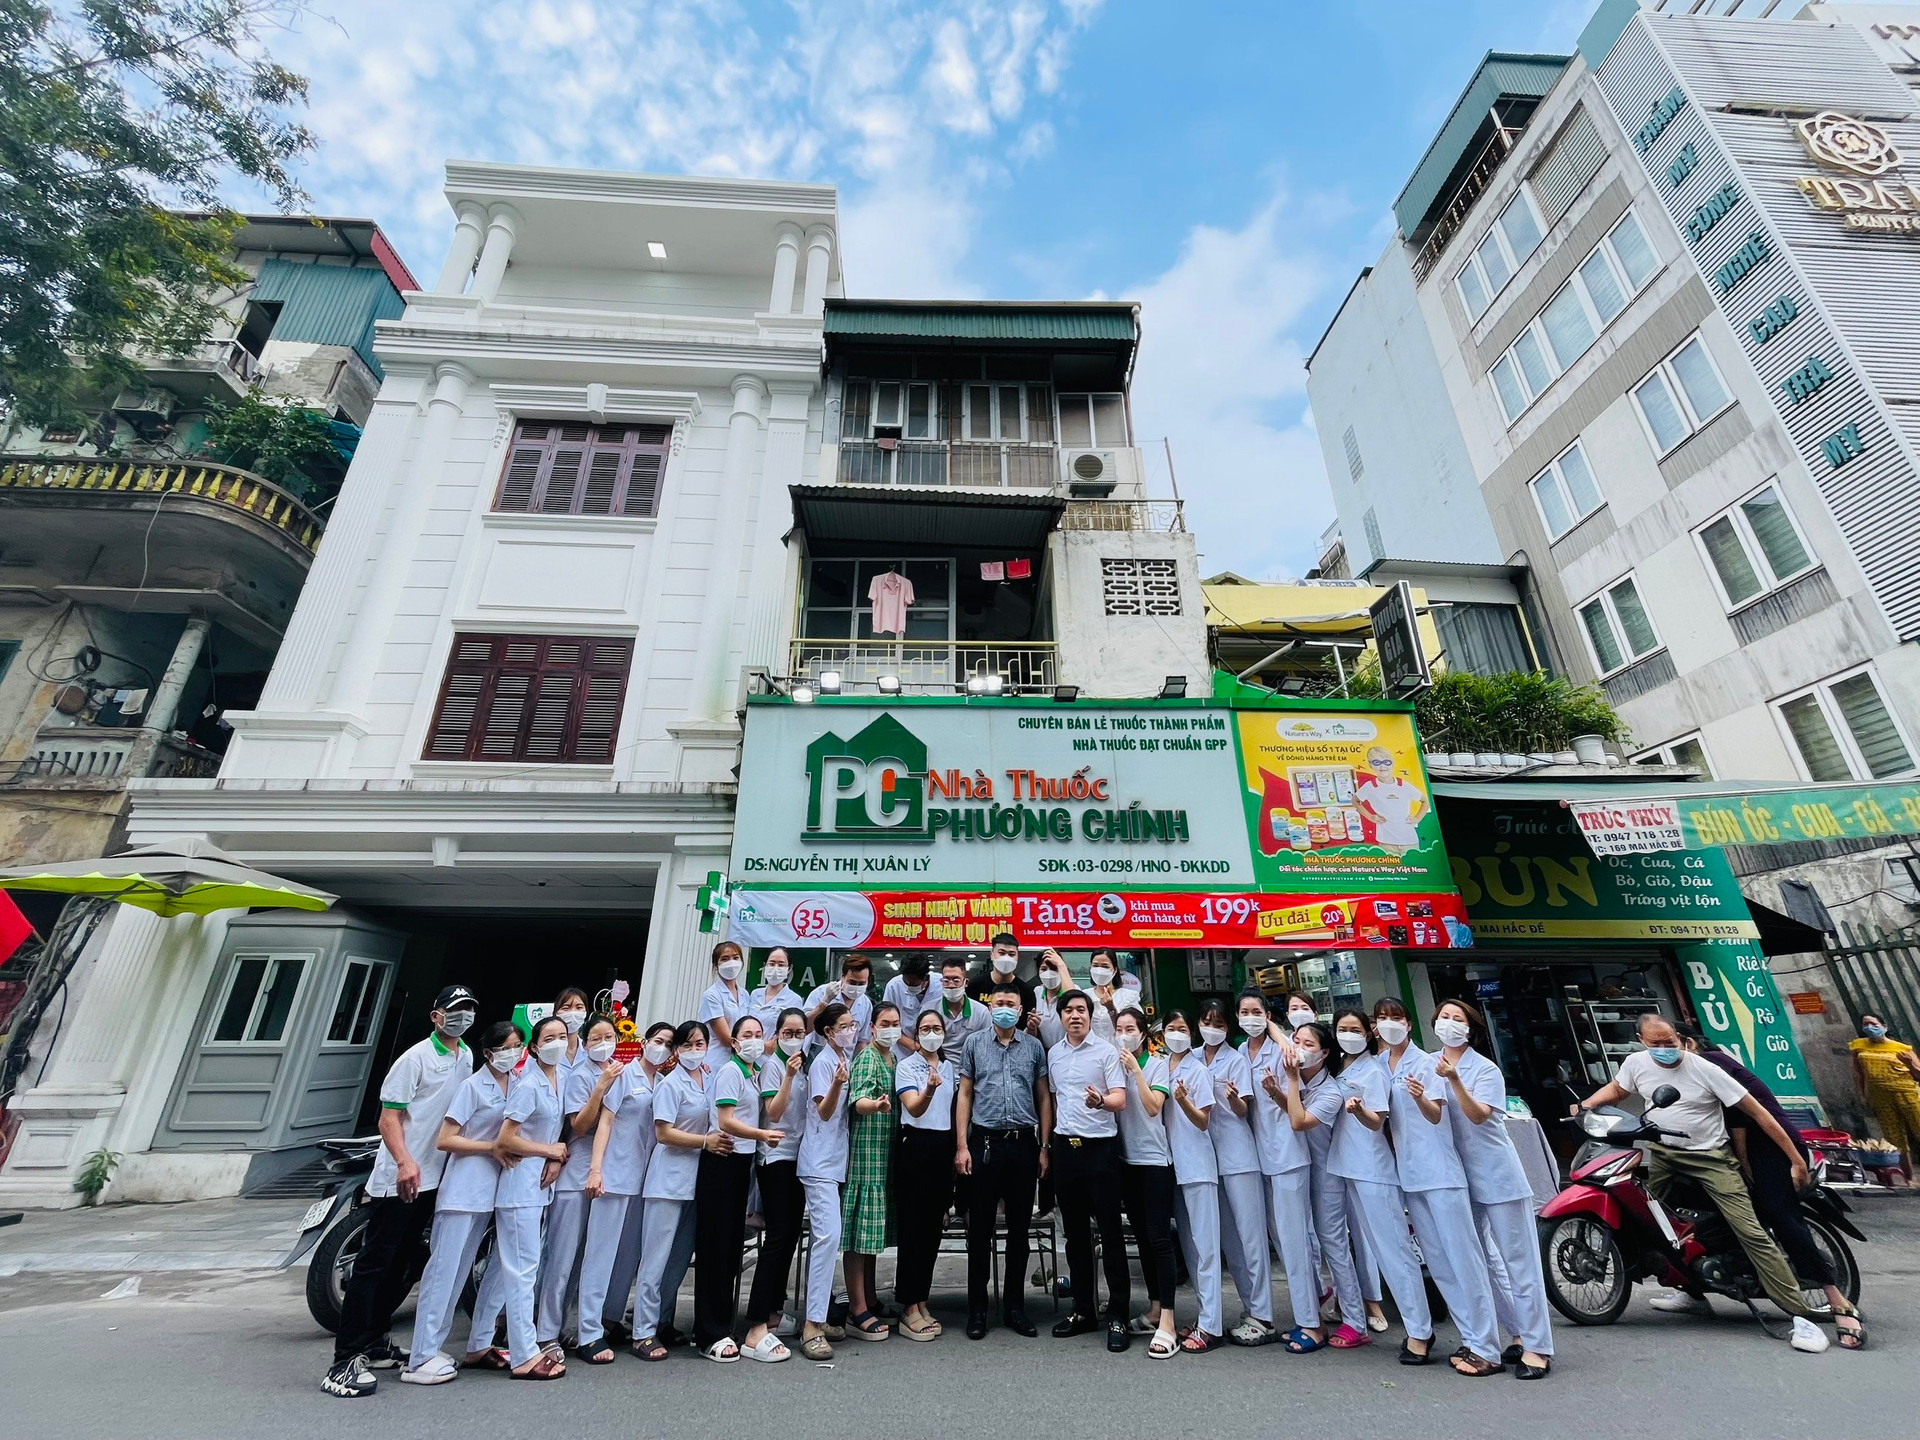 Nhà thuốc Phương Chính - Người anh cả trên thị trường dược phẩm thủ đô Hà Nội